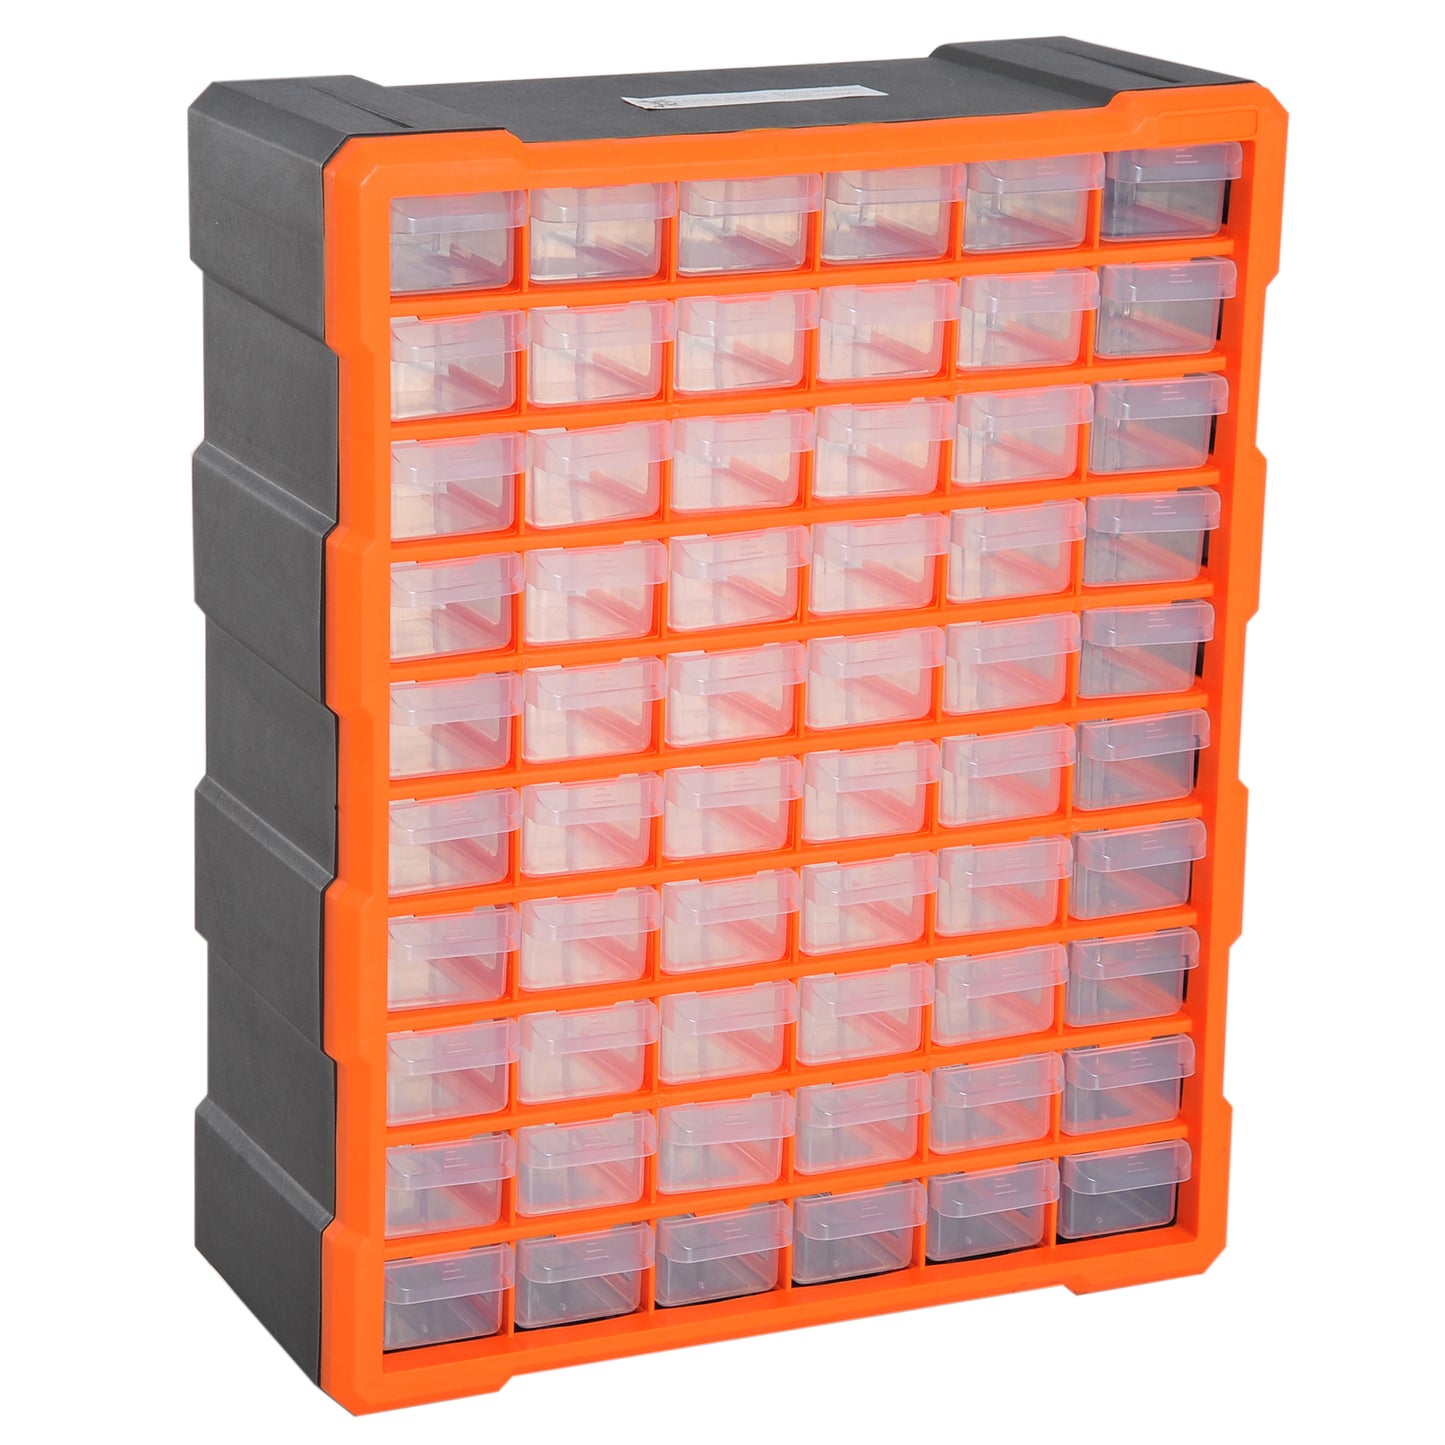 DURHAND 60 Drawer Storage Cabinets, 38Lx16Dx47.5H cm, Plastic-Orange